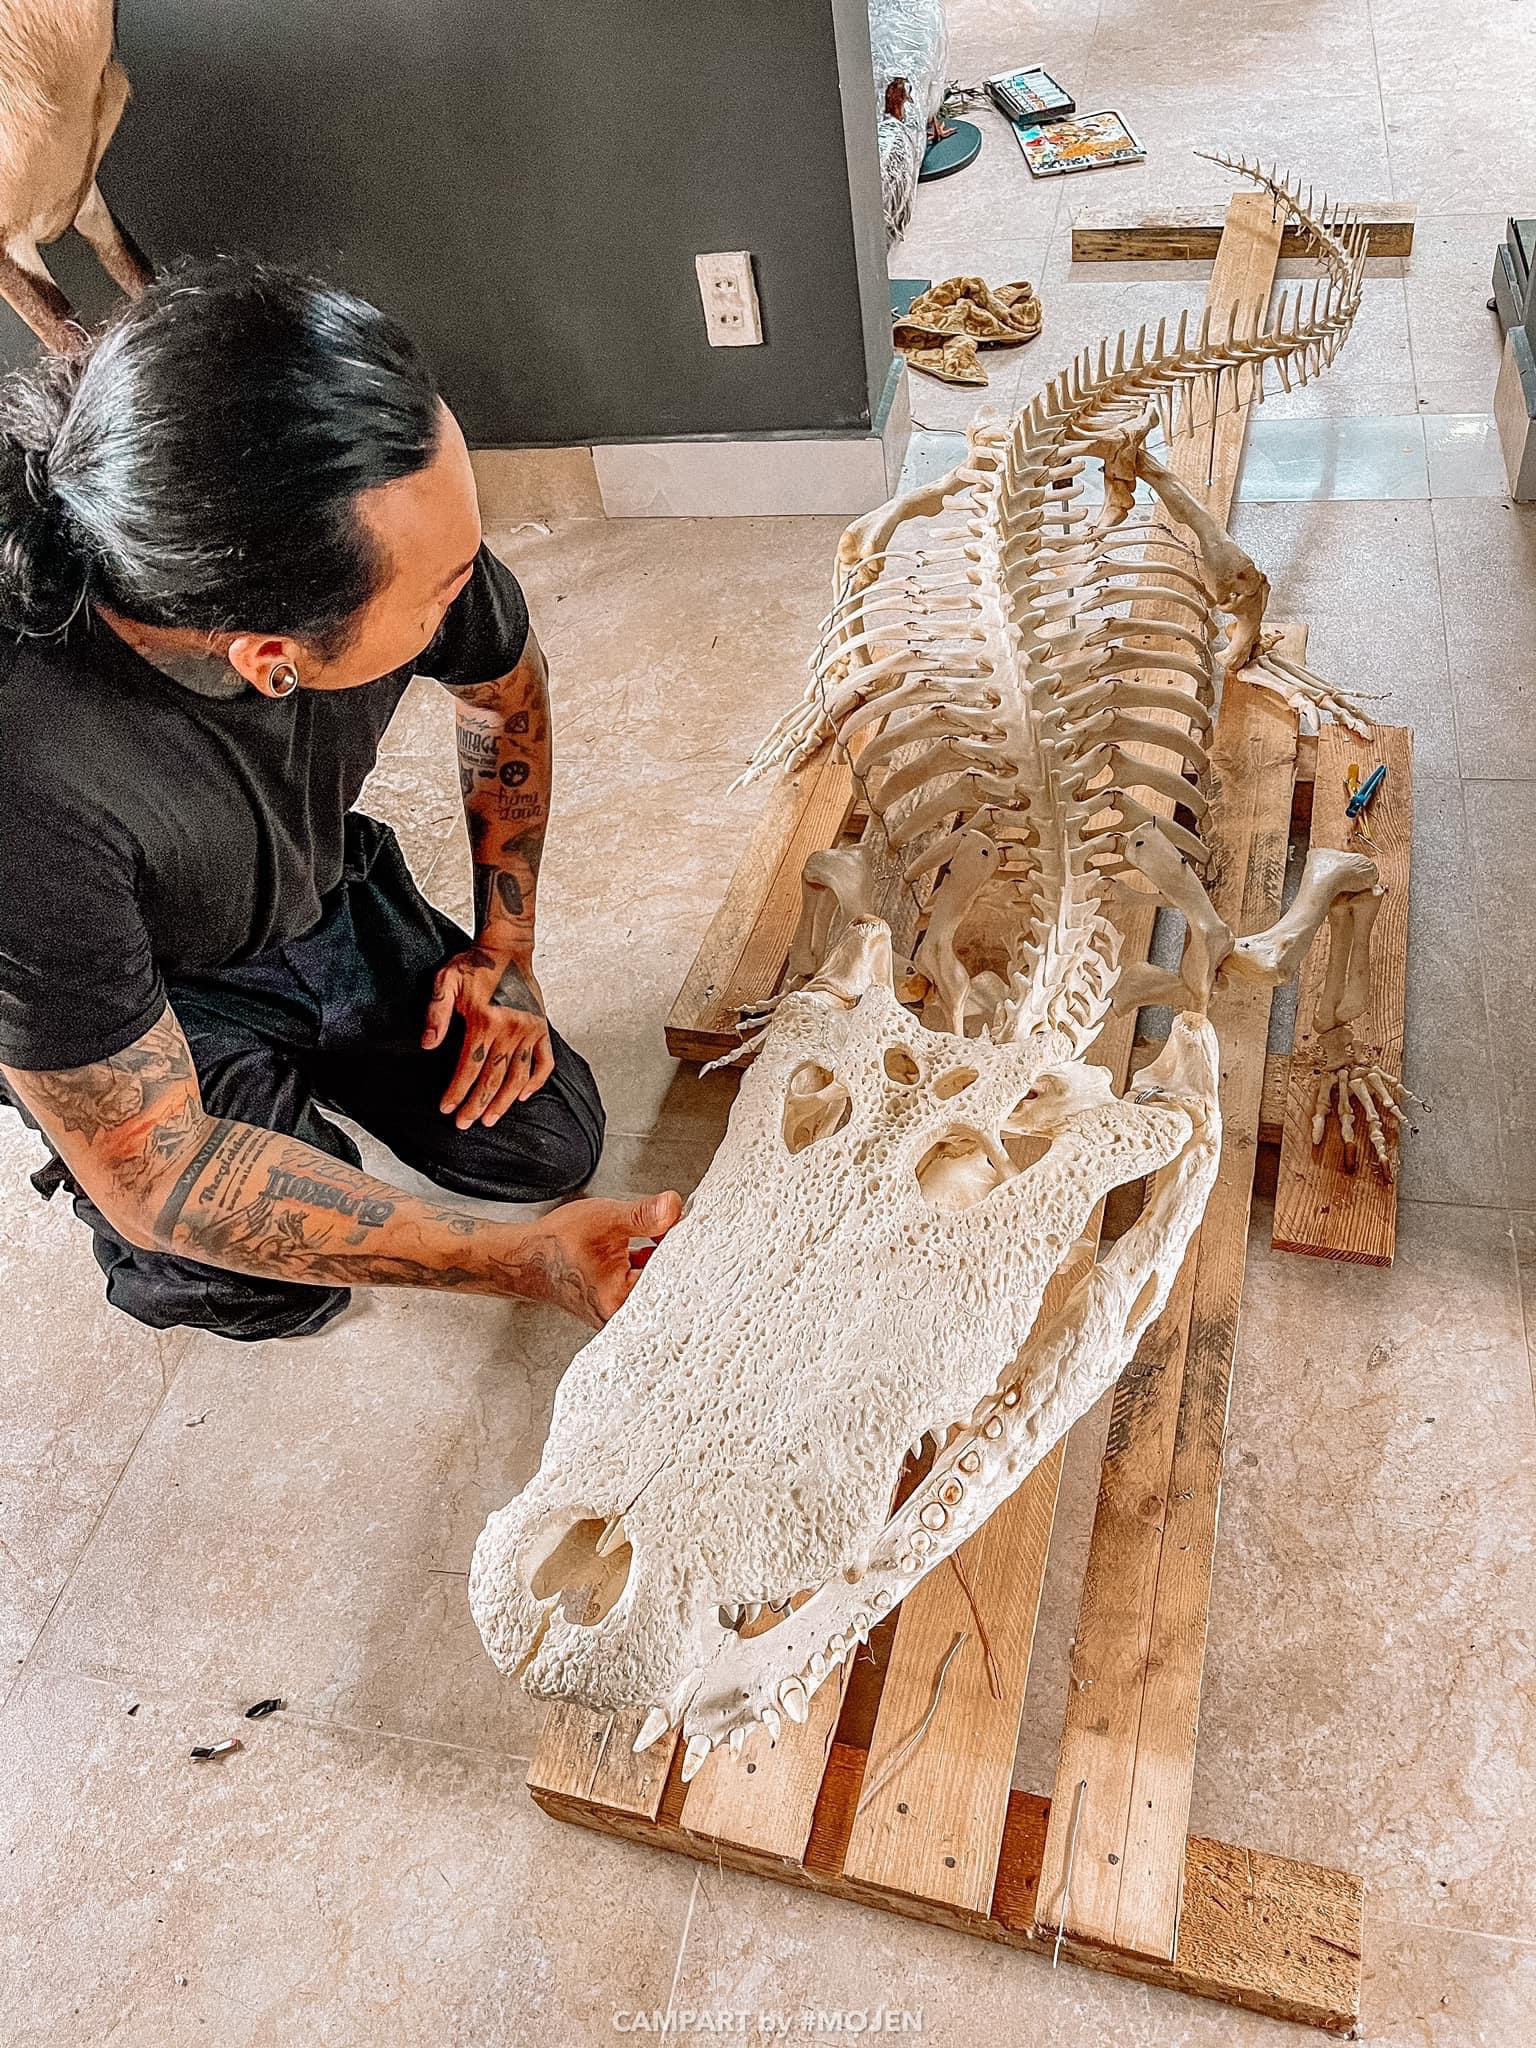 Dị nhân ở TPHCM sưu tập 200 bộ xương động vật để... trang trí nhà - 7